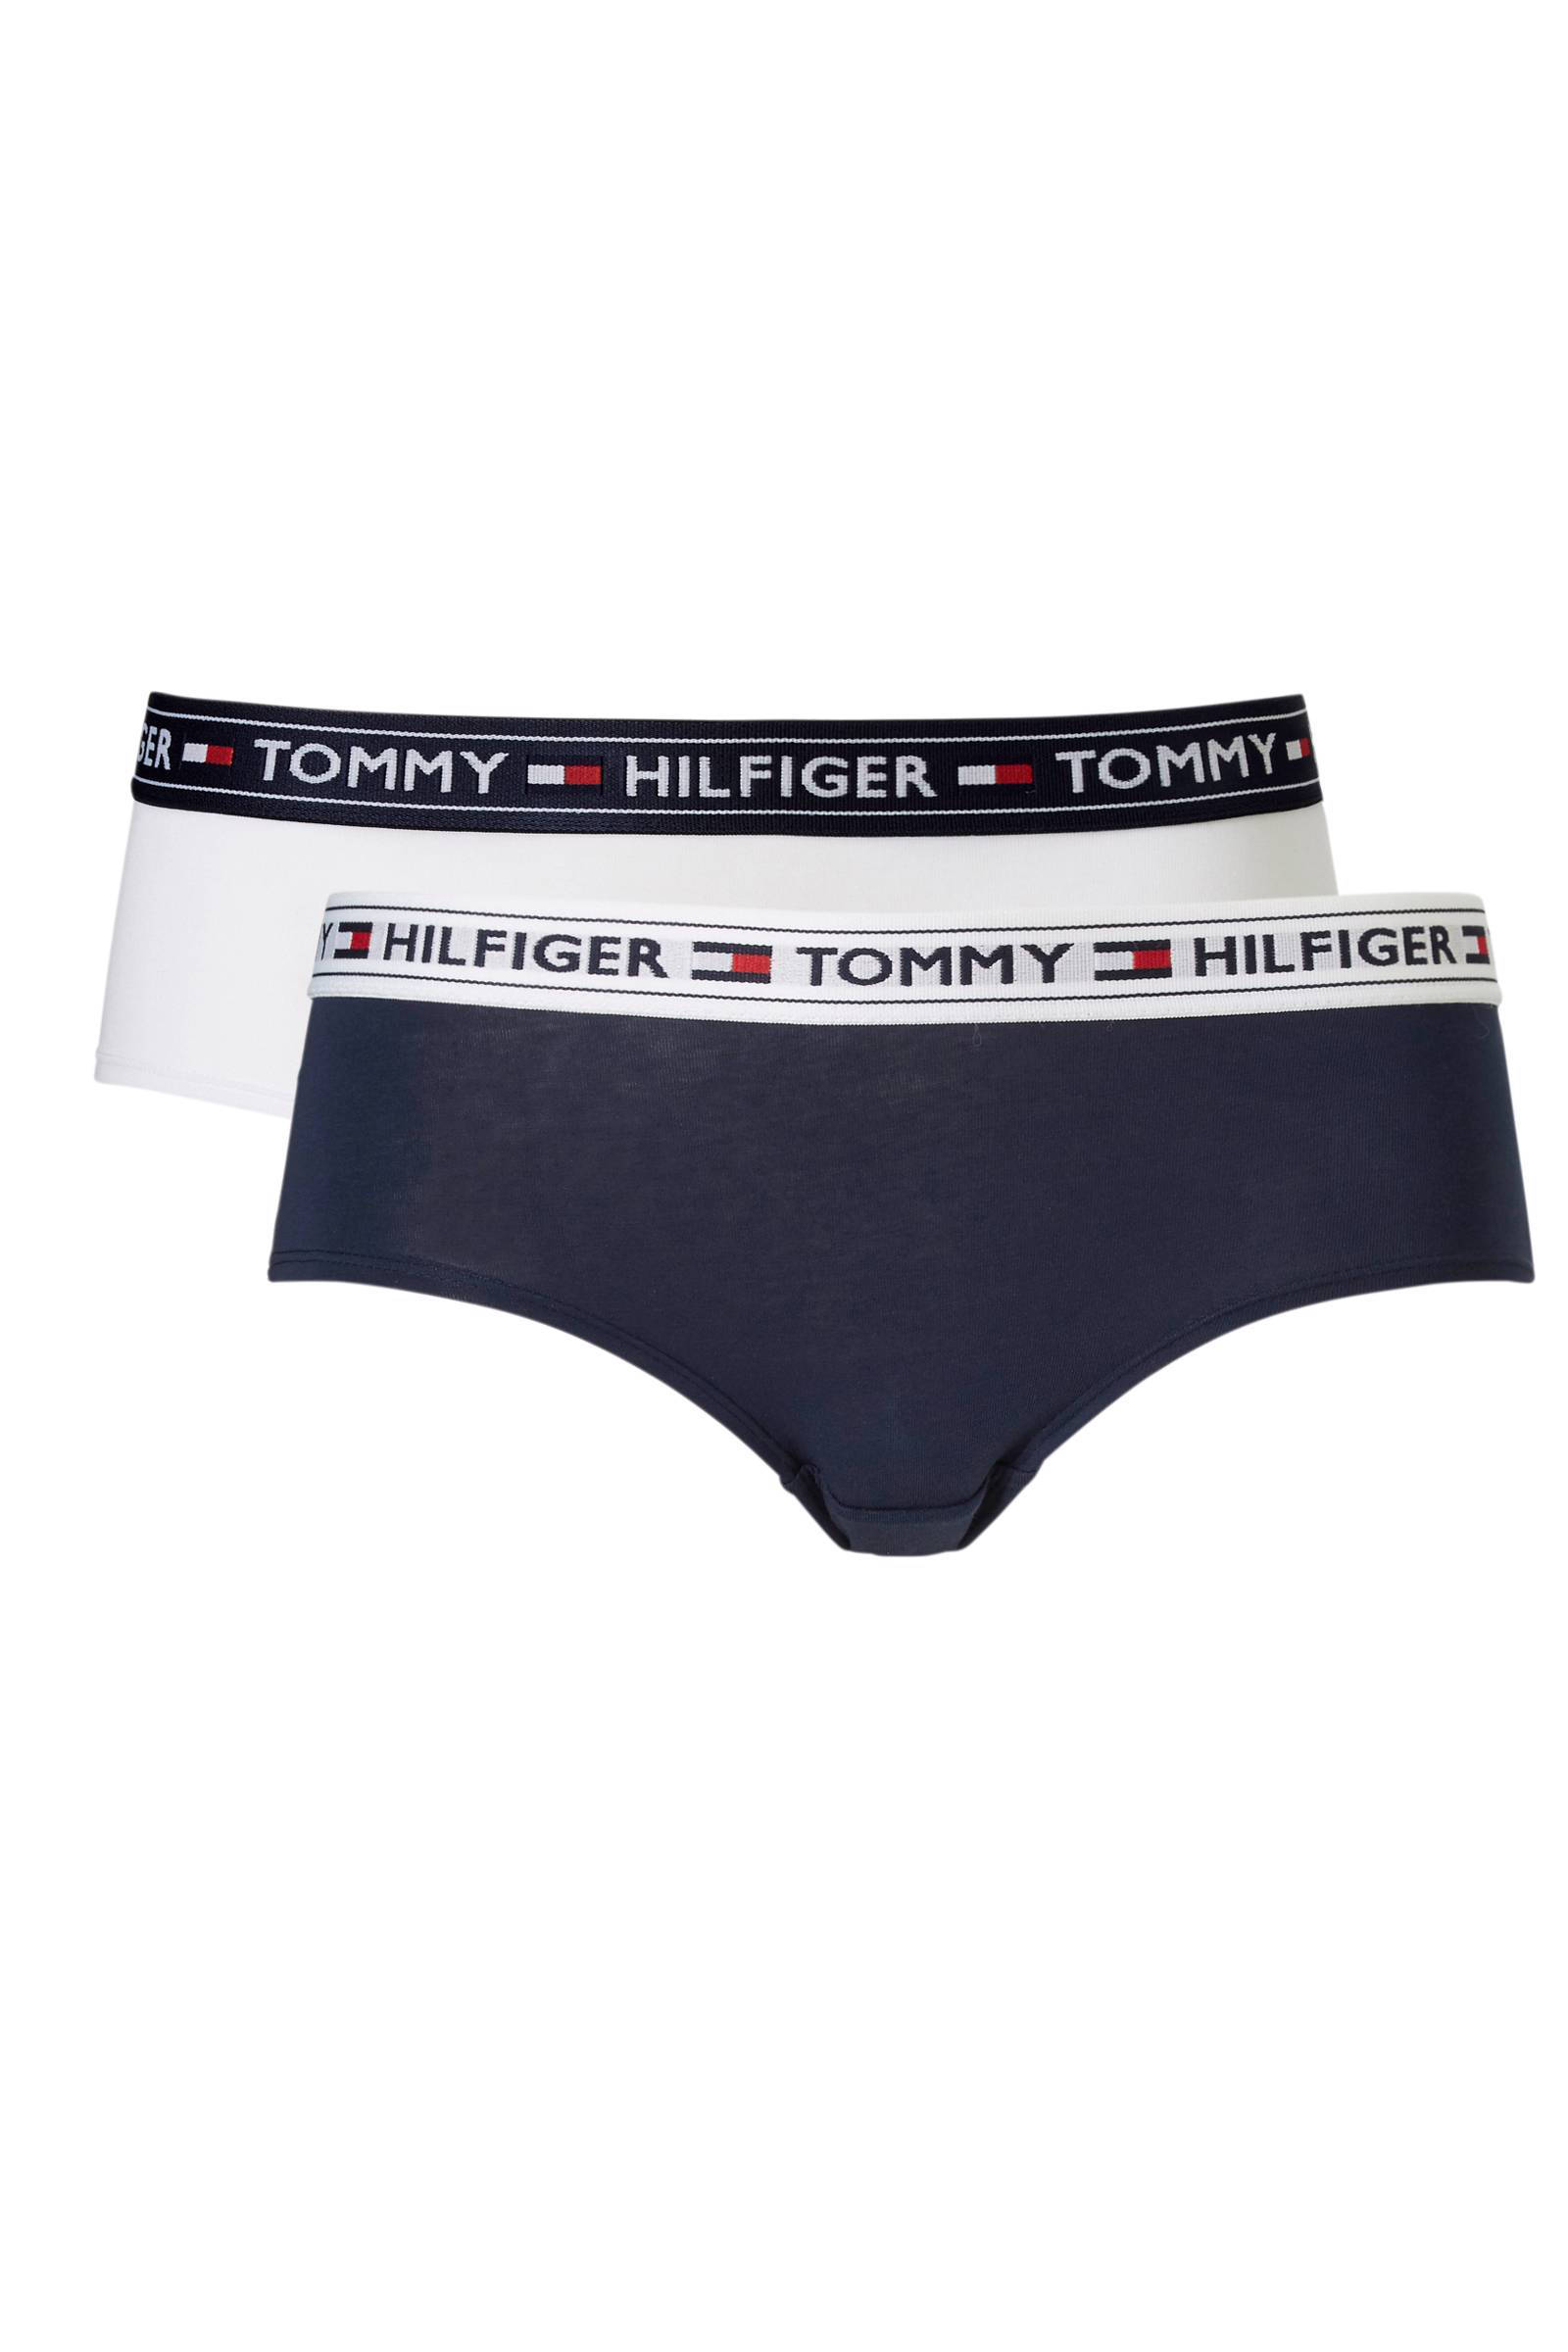 Tommy Hilfiger hipsters(va.128/140 ) online kopen